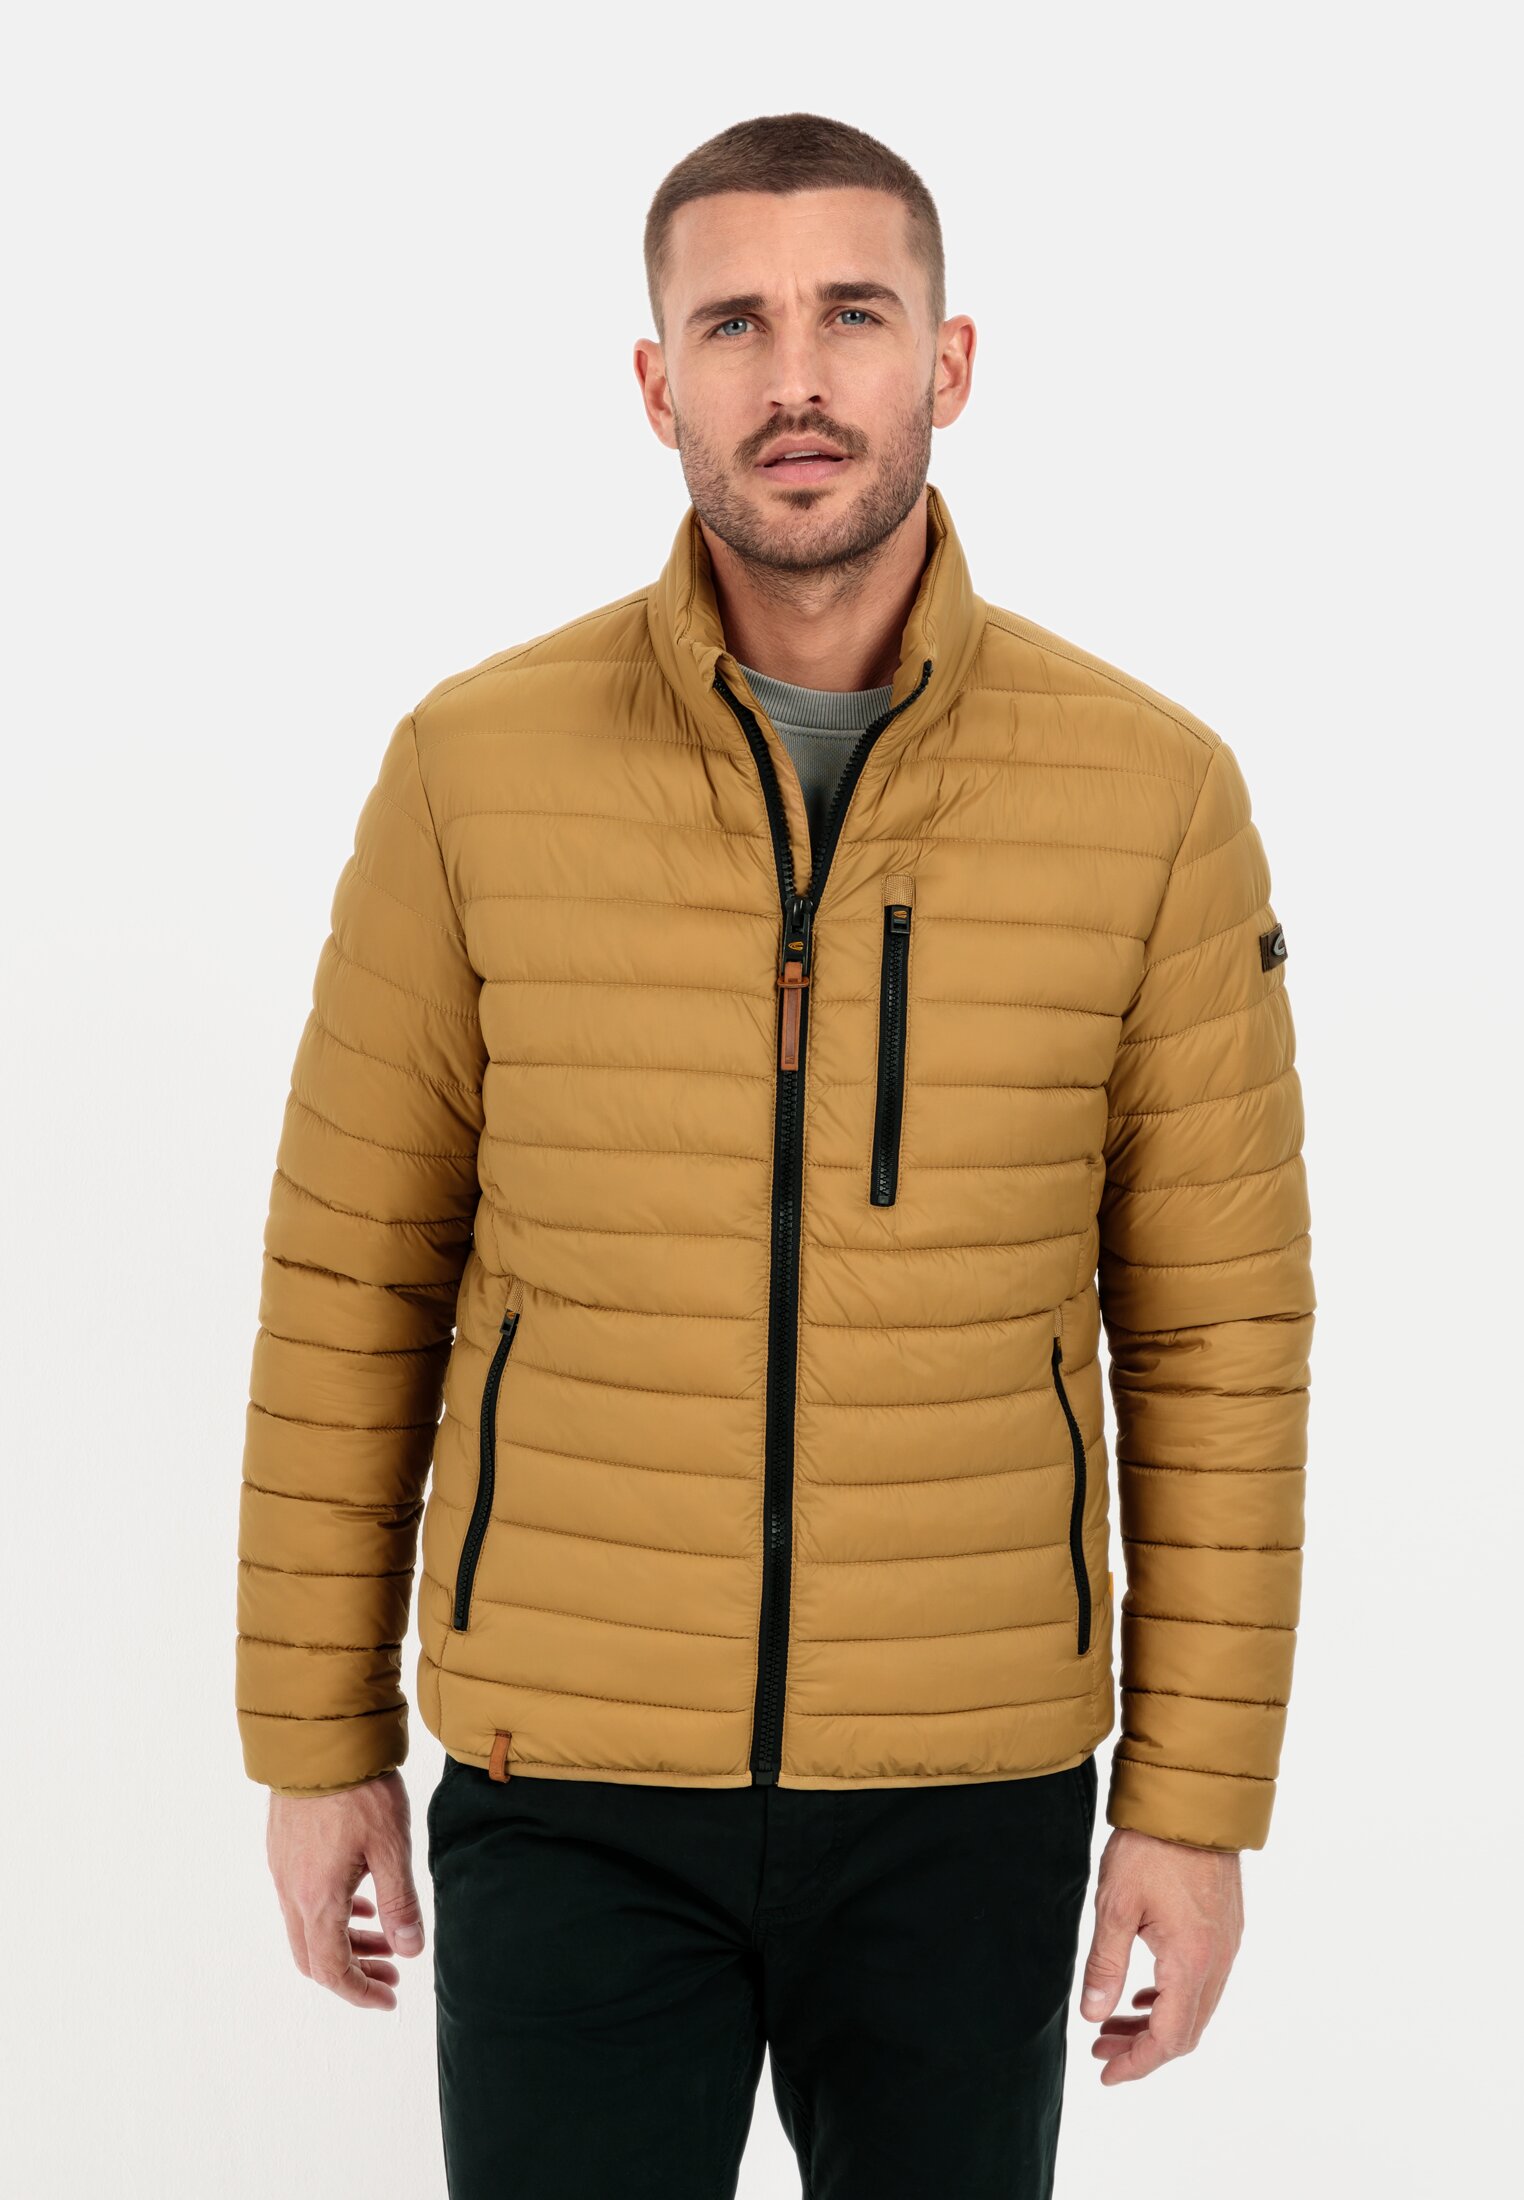 Quilted jacket for Herren in Beige-Brown 56 